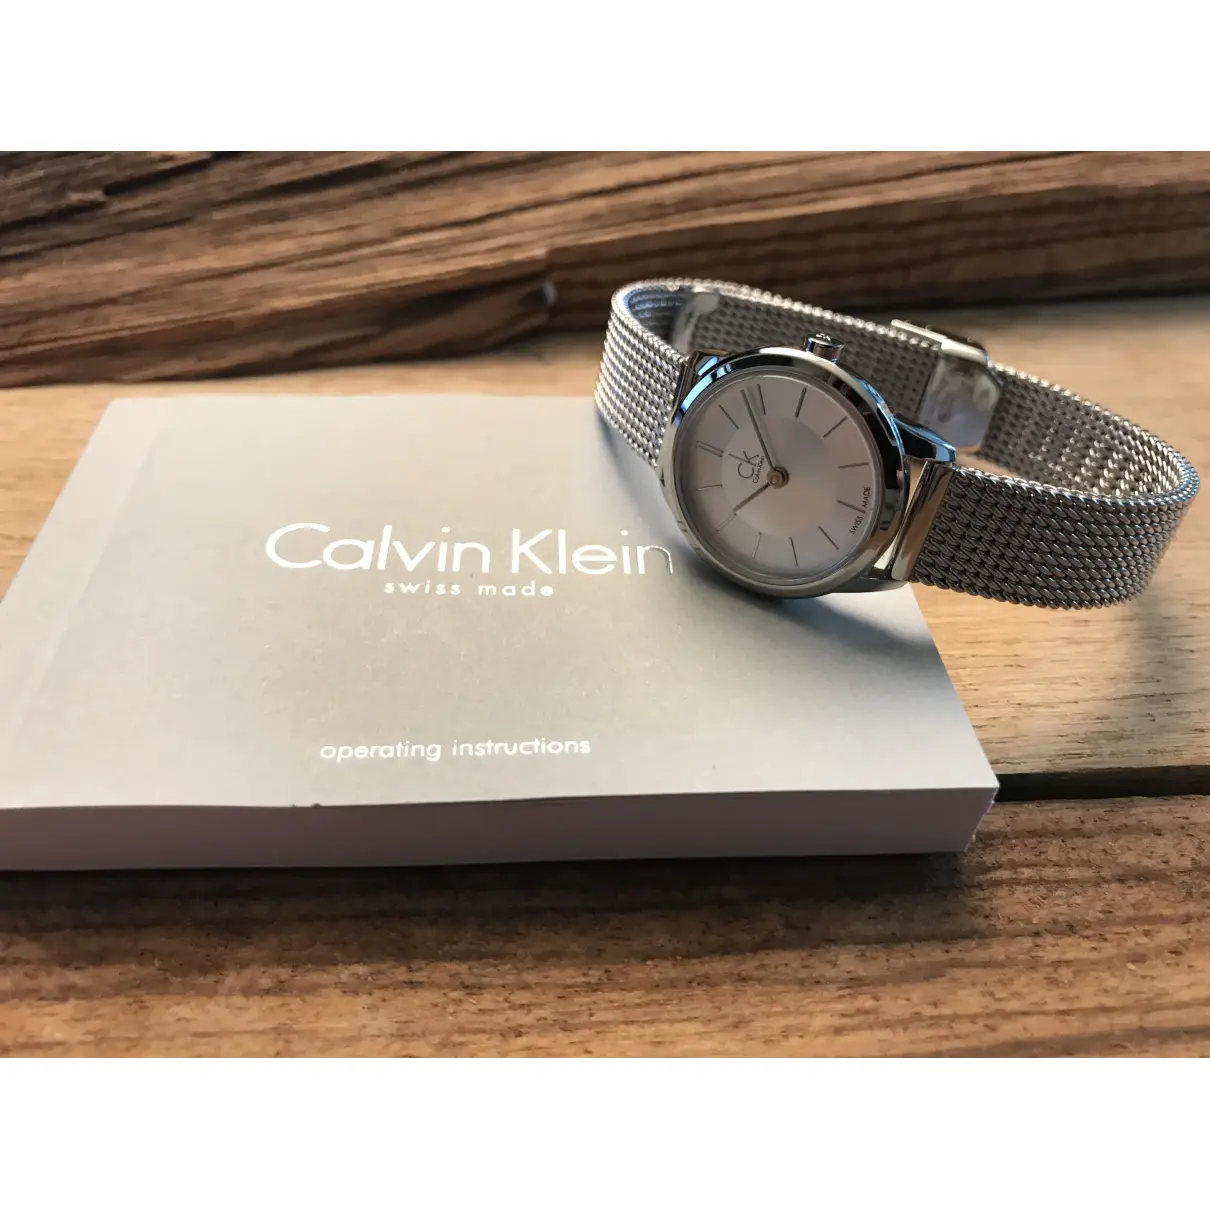 Buy Calvin Klein Silver watch online